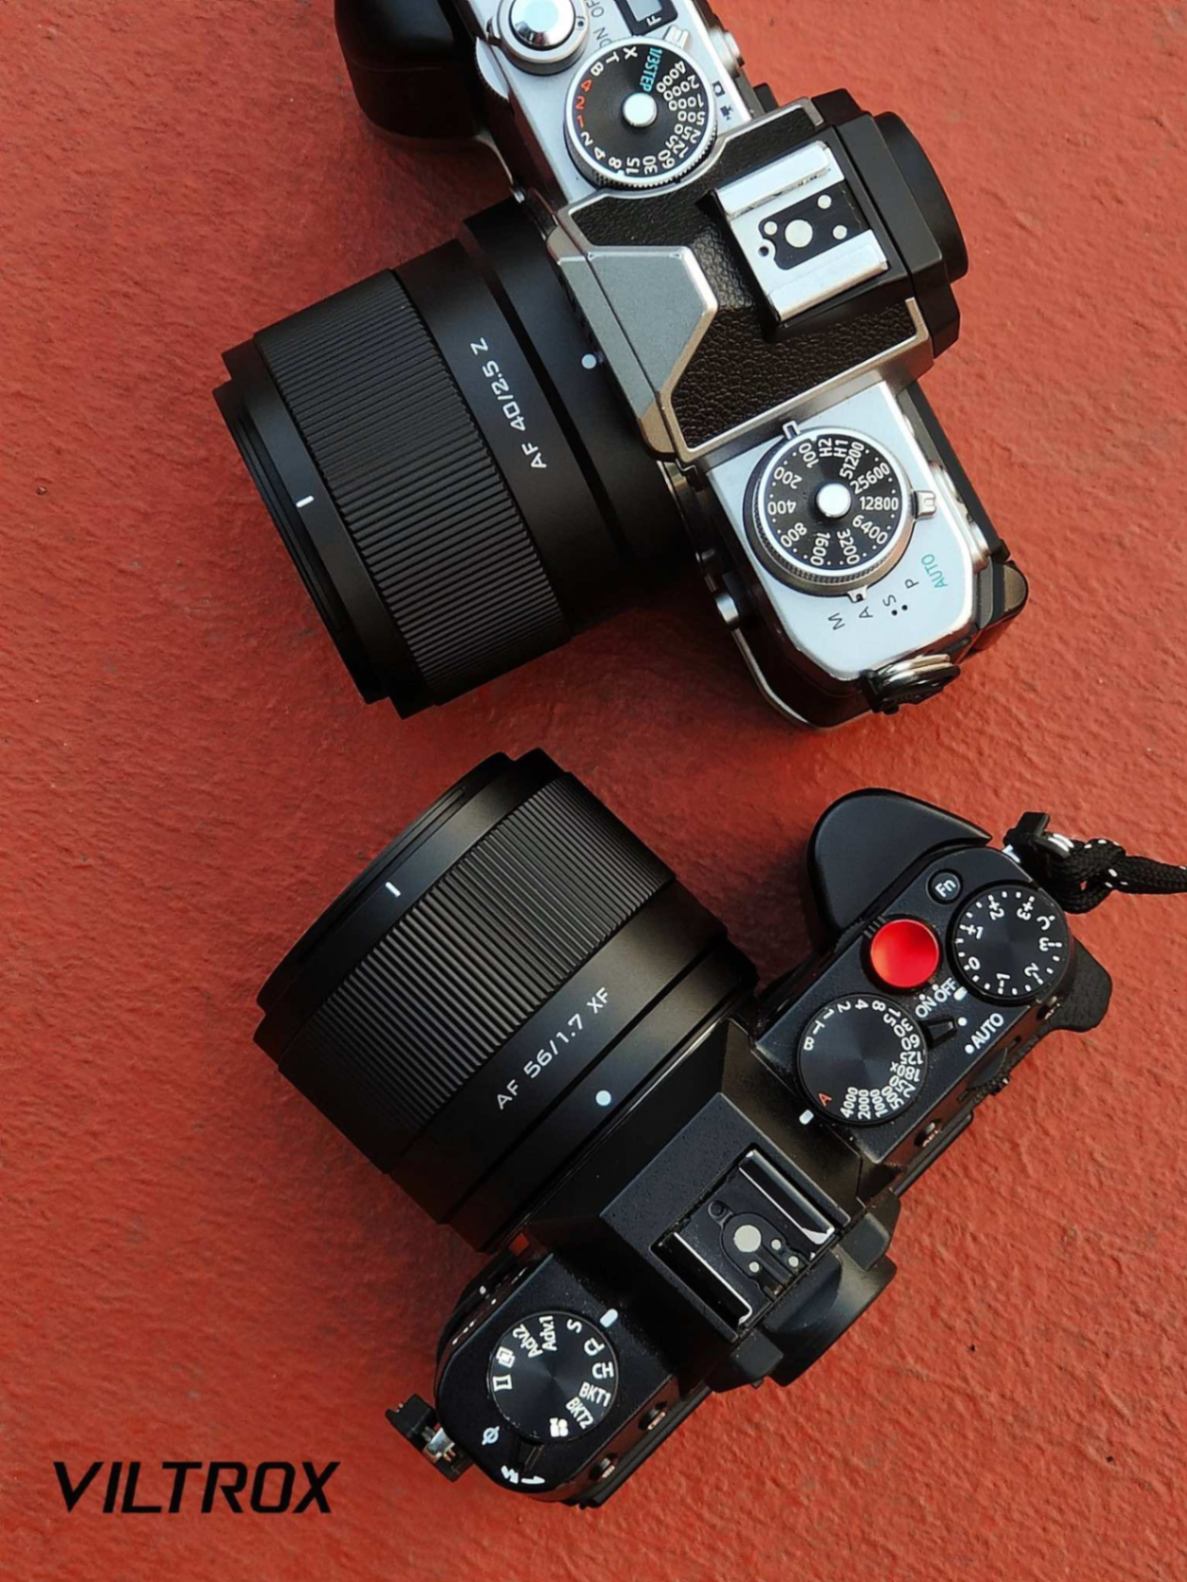 Hình ảnh 2 ống kính mới nhất của Viltrox :  Viltrox 56mm f/1.7 và 40mm f/2.5